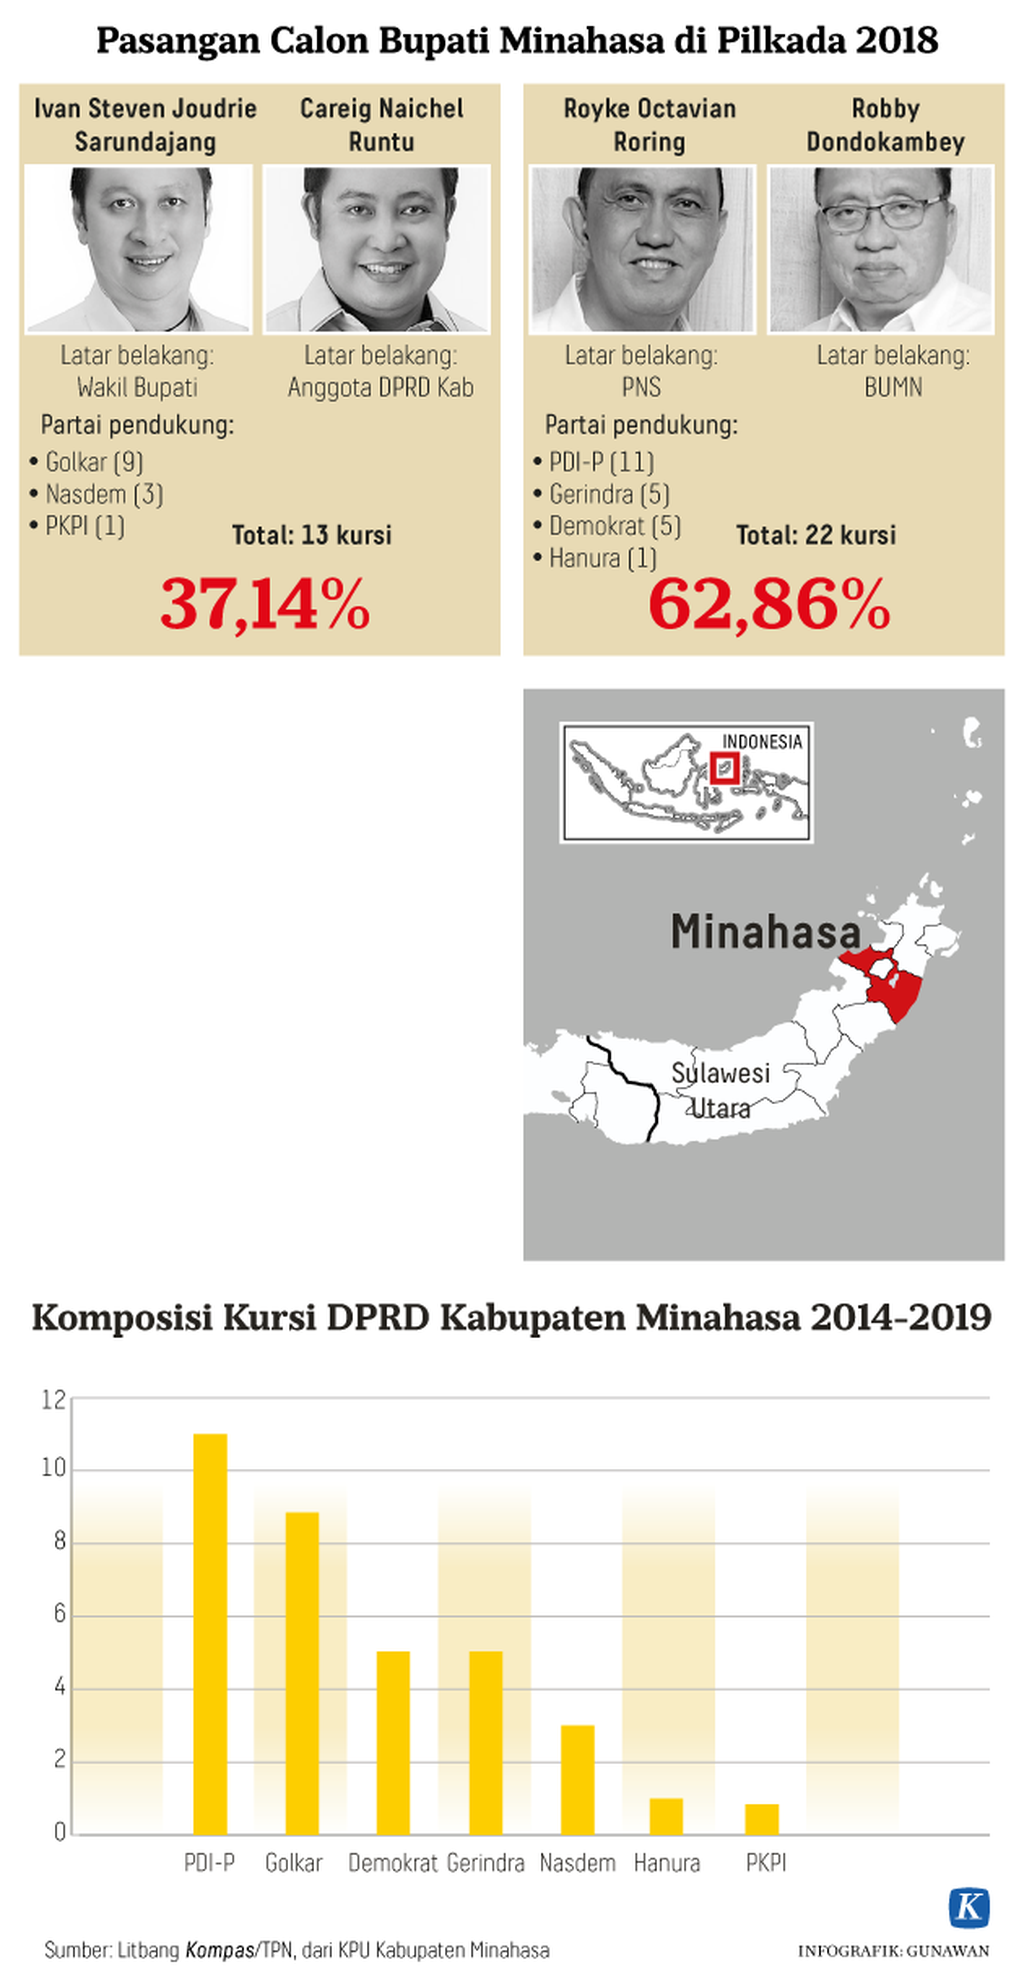 https://cdn-assetd.kompas.id/QEbh3l8e31_Sm0dKPm41iBD-Su0=/1024x1983/https%3A%2F%2Fkompas.id%2Fwp-content%2Fuploads%2F2018%2F05%2F20180502_GKT_Pilkada-Kabupaten-Minahasa-2018-Kompas-ID-W.png